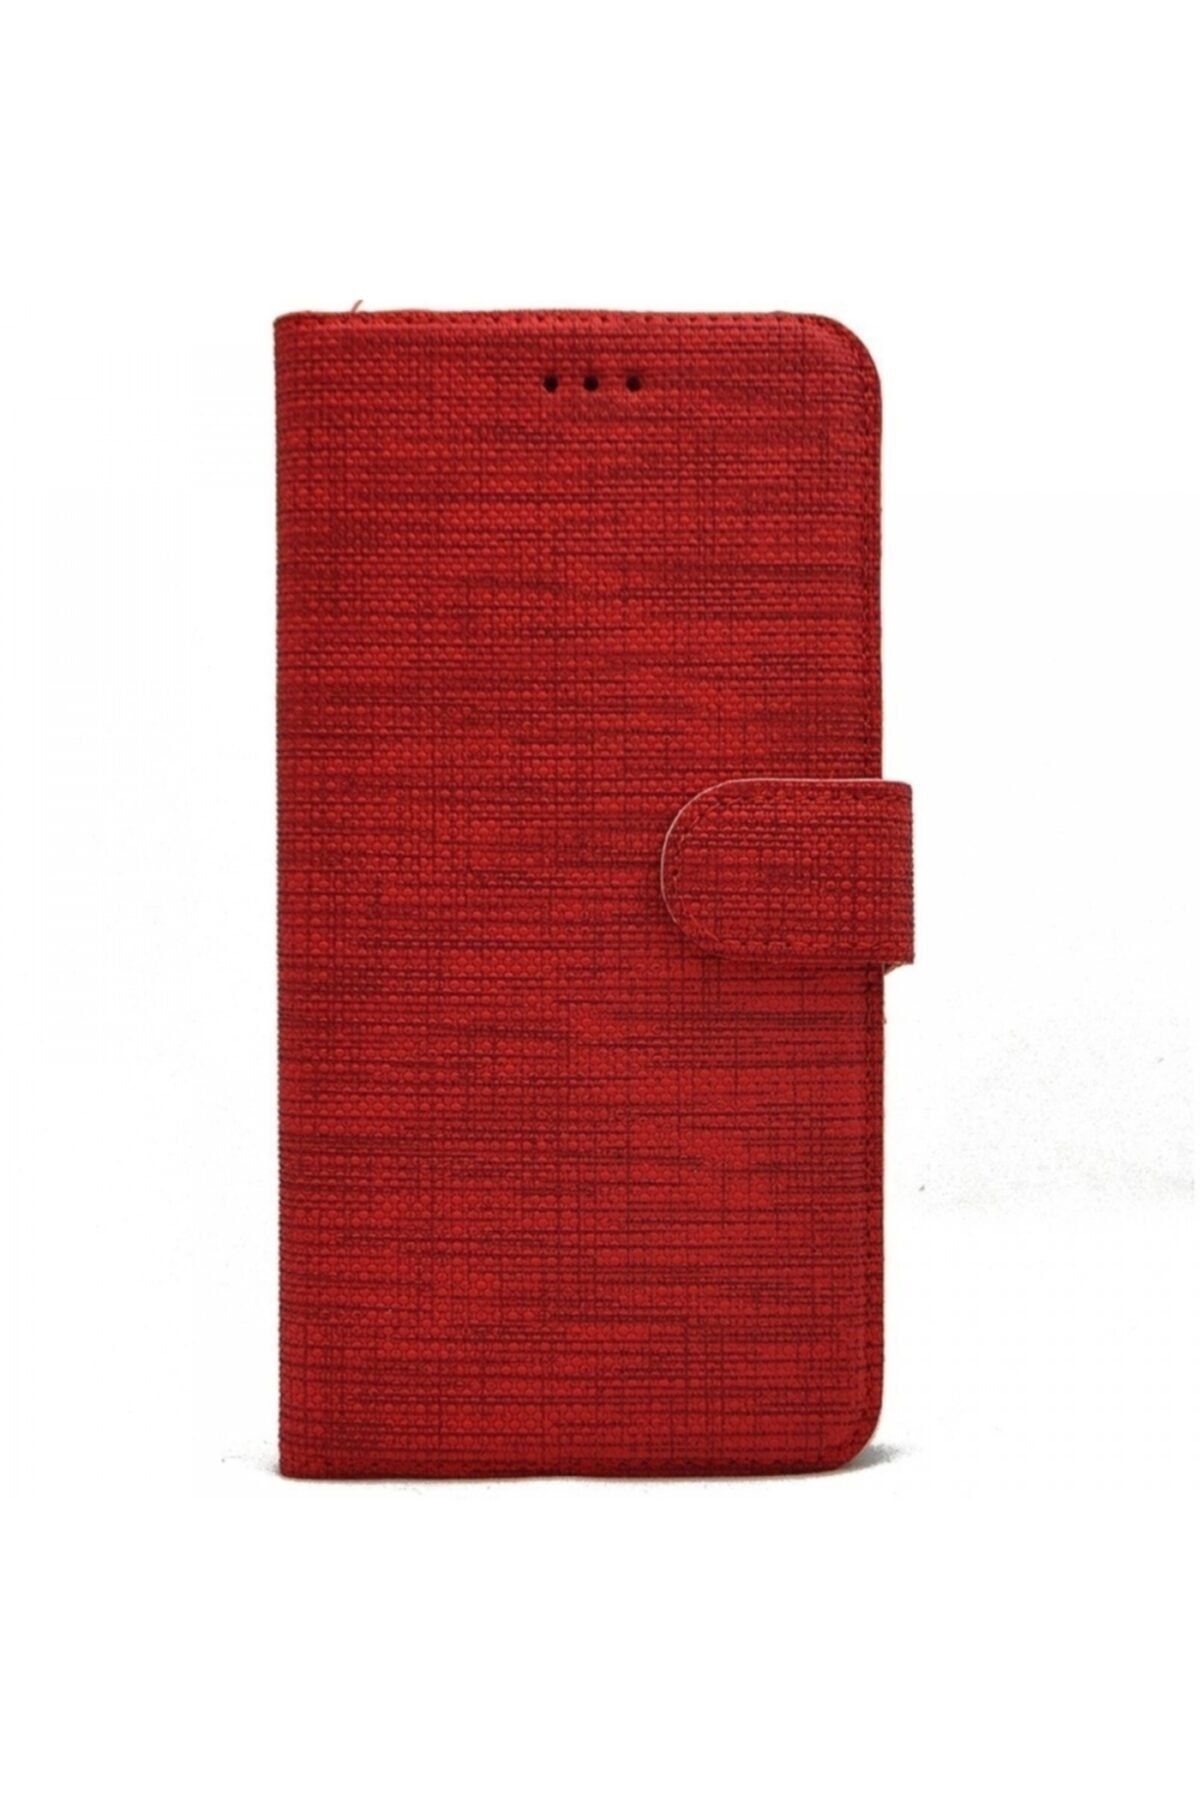 Samsung Galaxy J7 Prime Kılıf Kumaş Spor Standlı Cüzdan Kırmızı